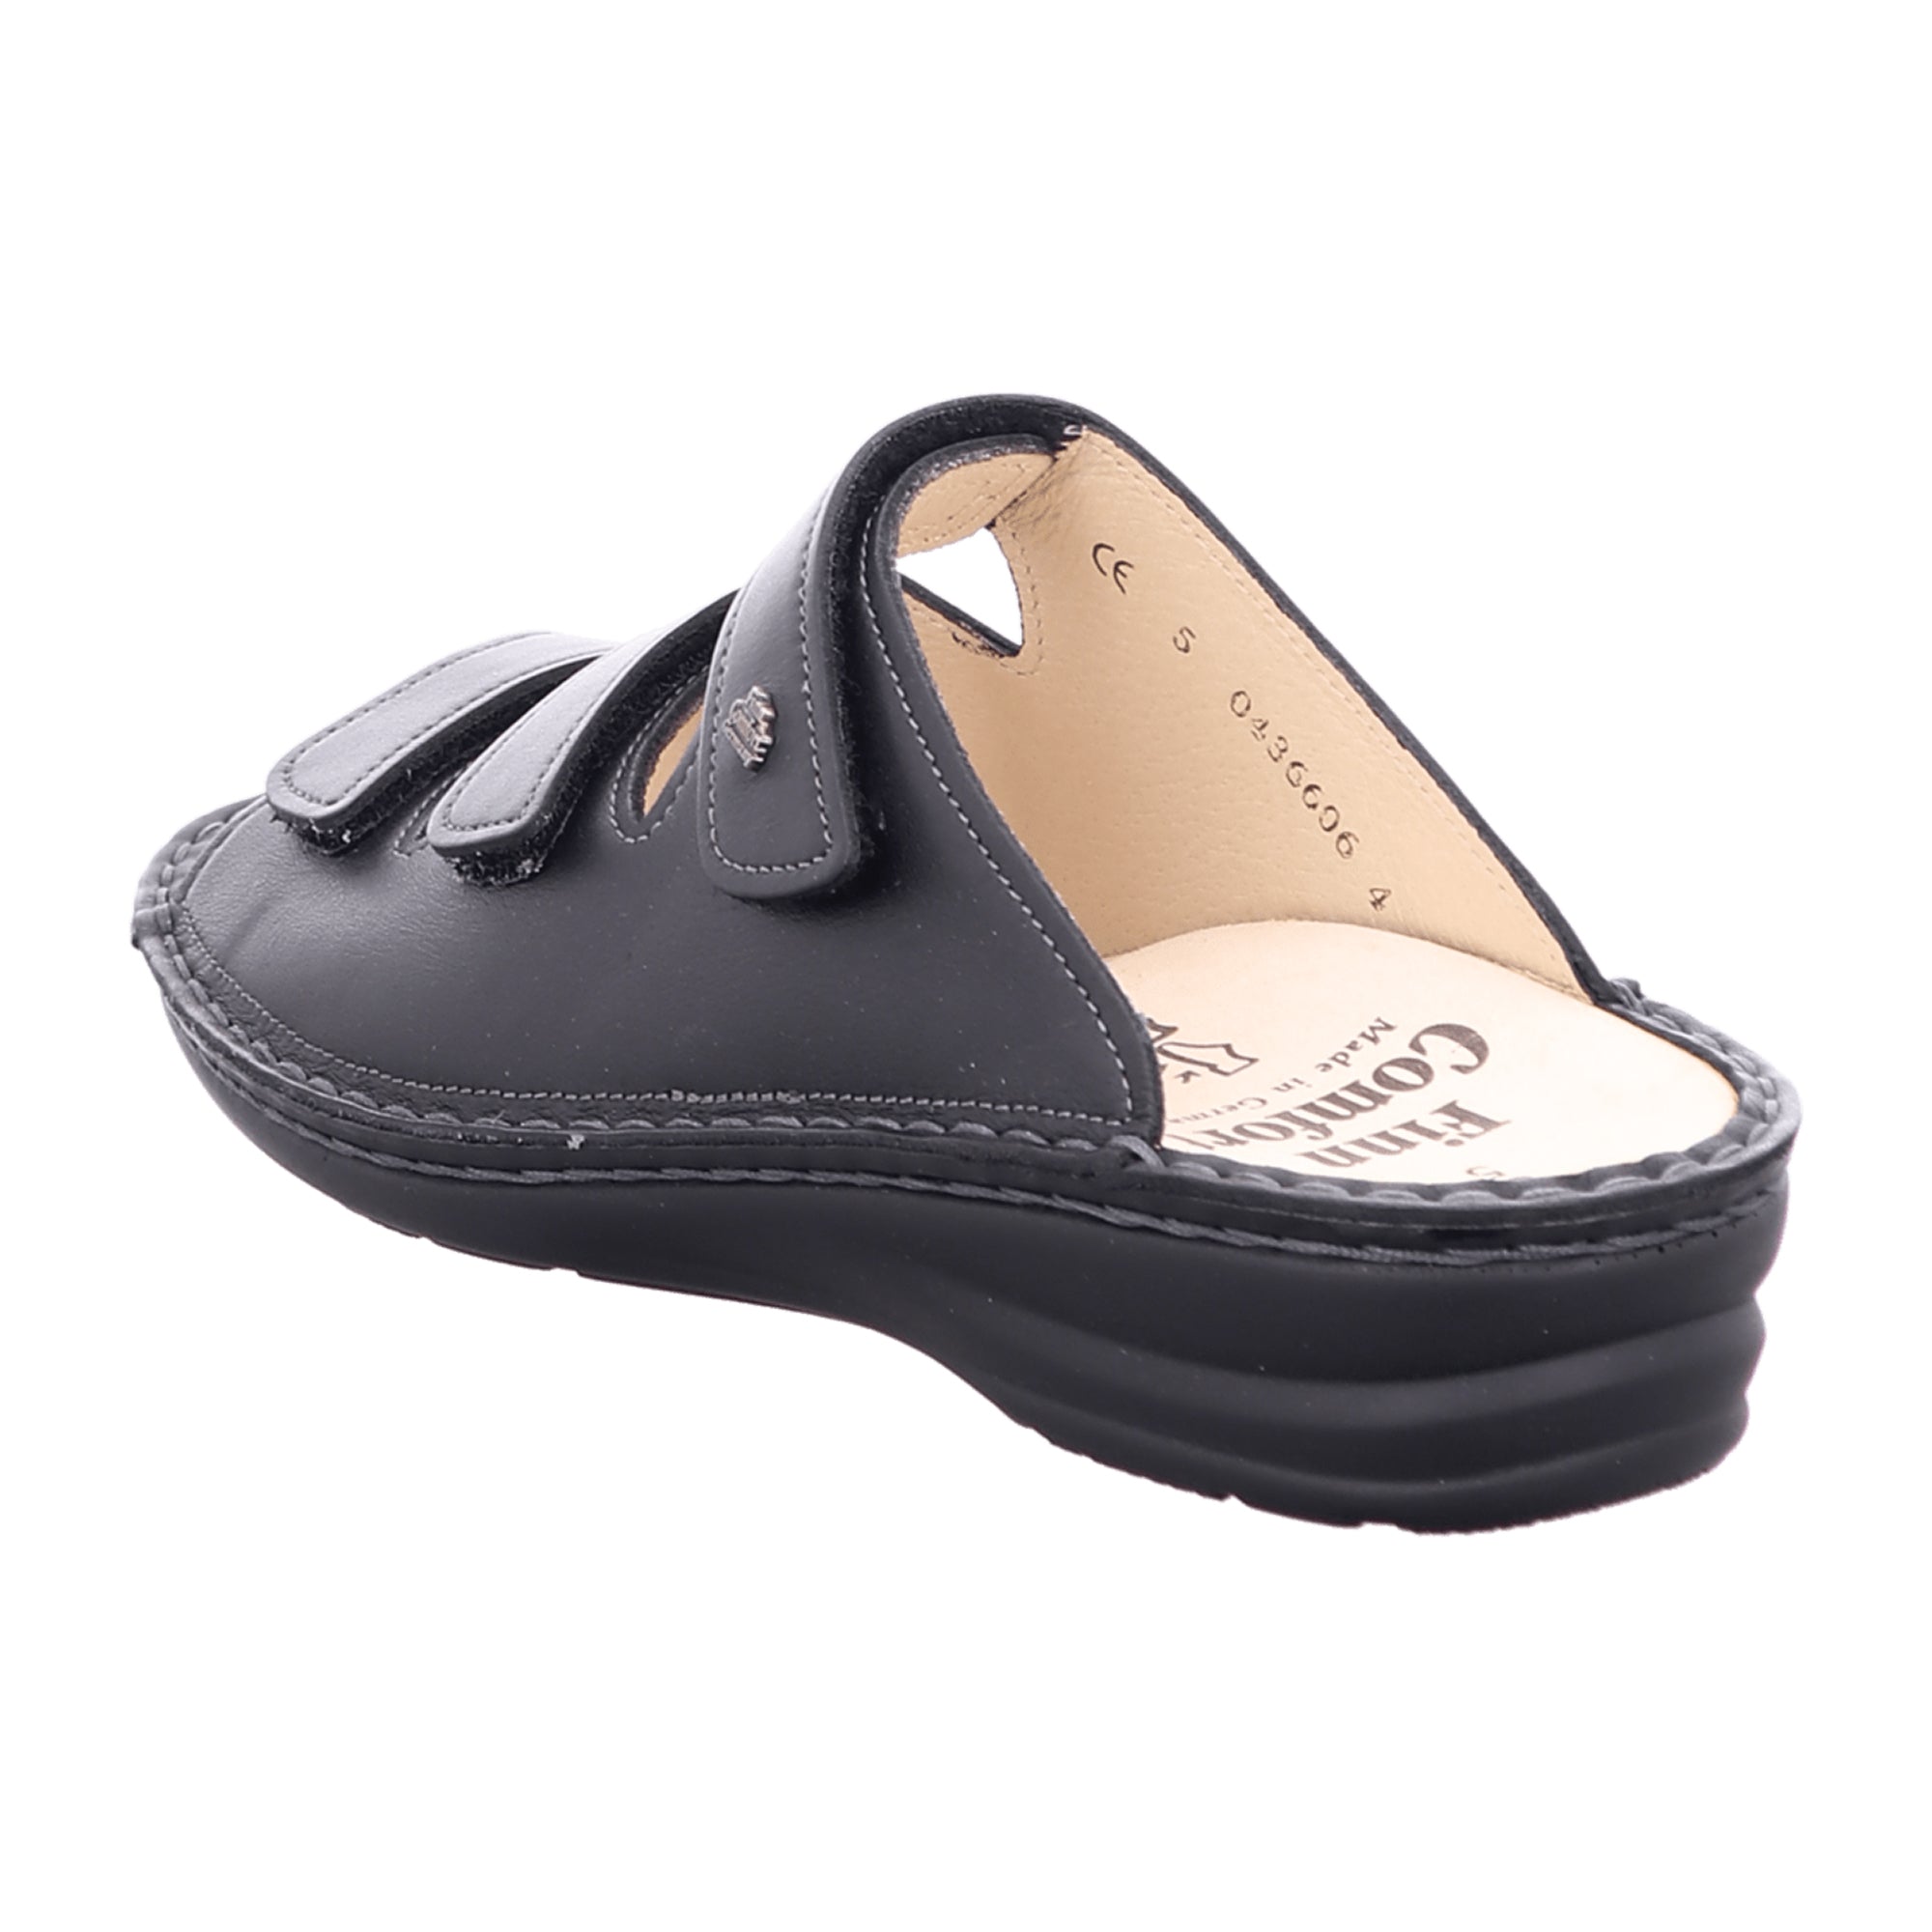 Finn Comfort Fumane Women's Comfort Sandals - Elegant Black